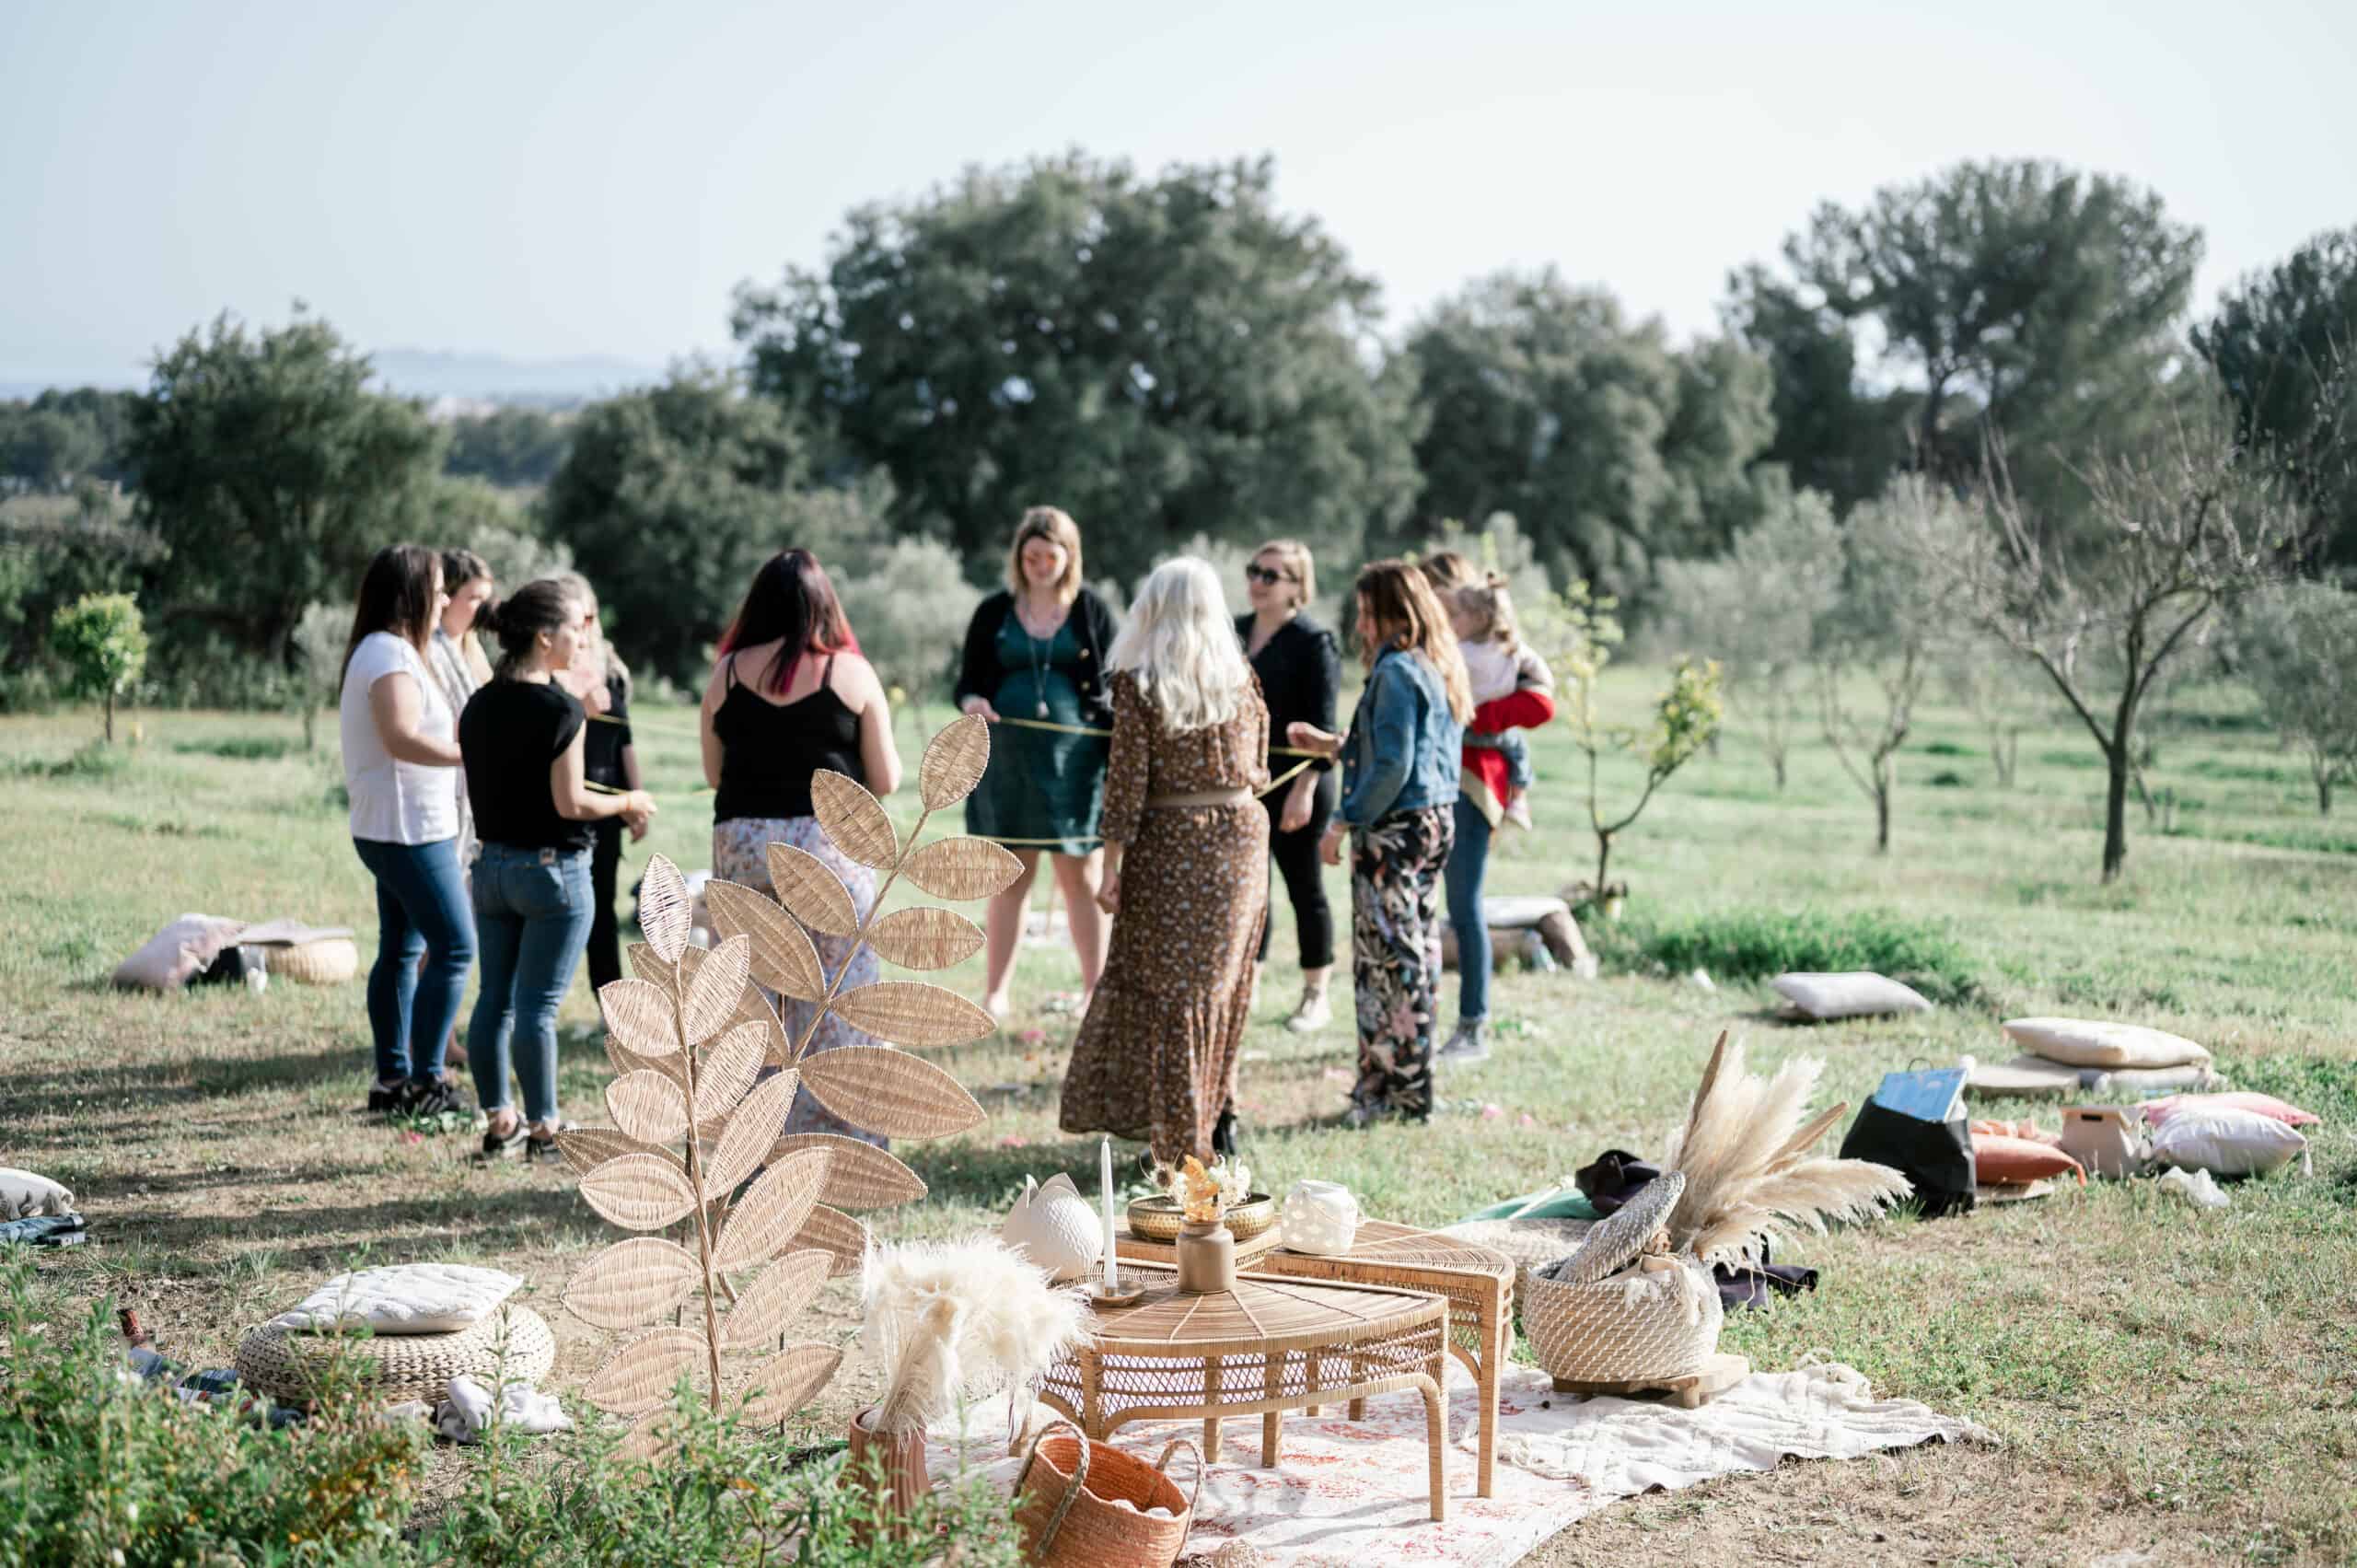 femmes dans un champ d'olivier debout en cercle relier par un ruban